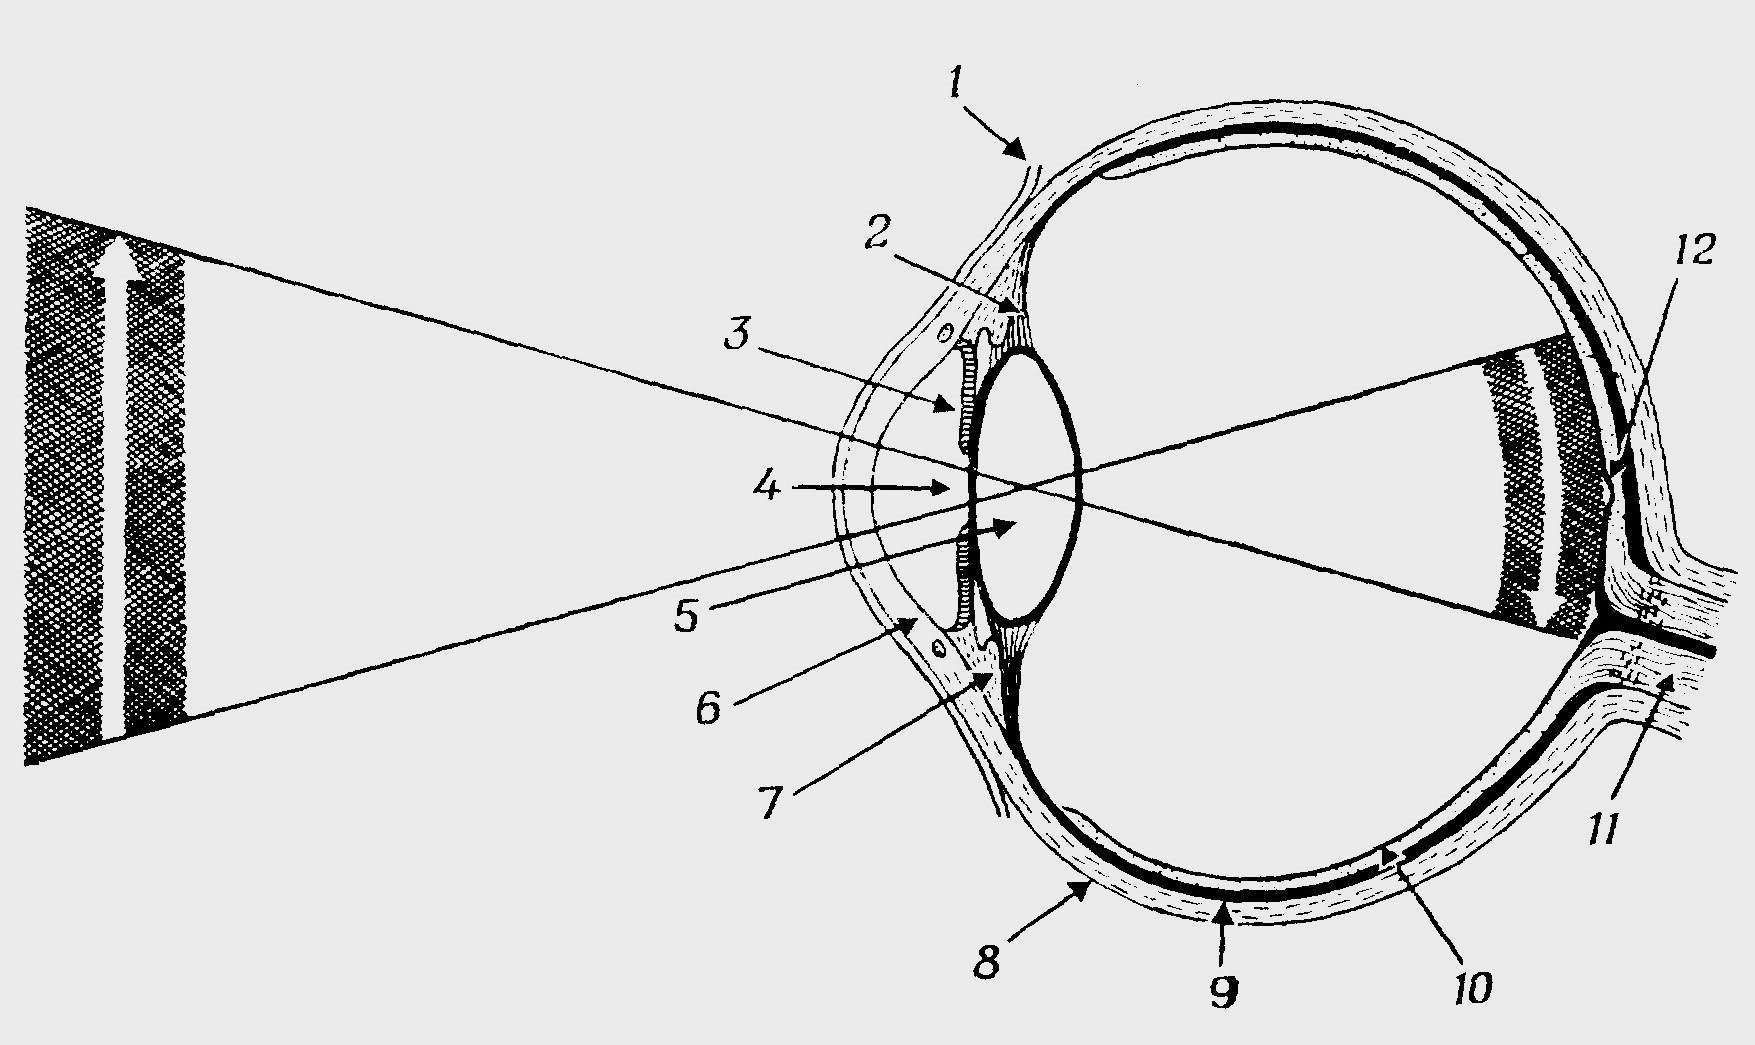 Оптическая система глаз последовательность